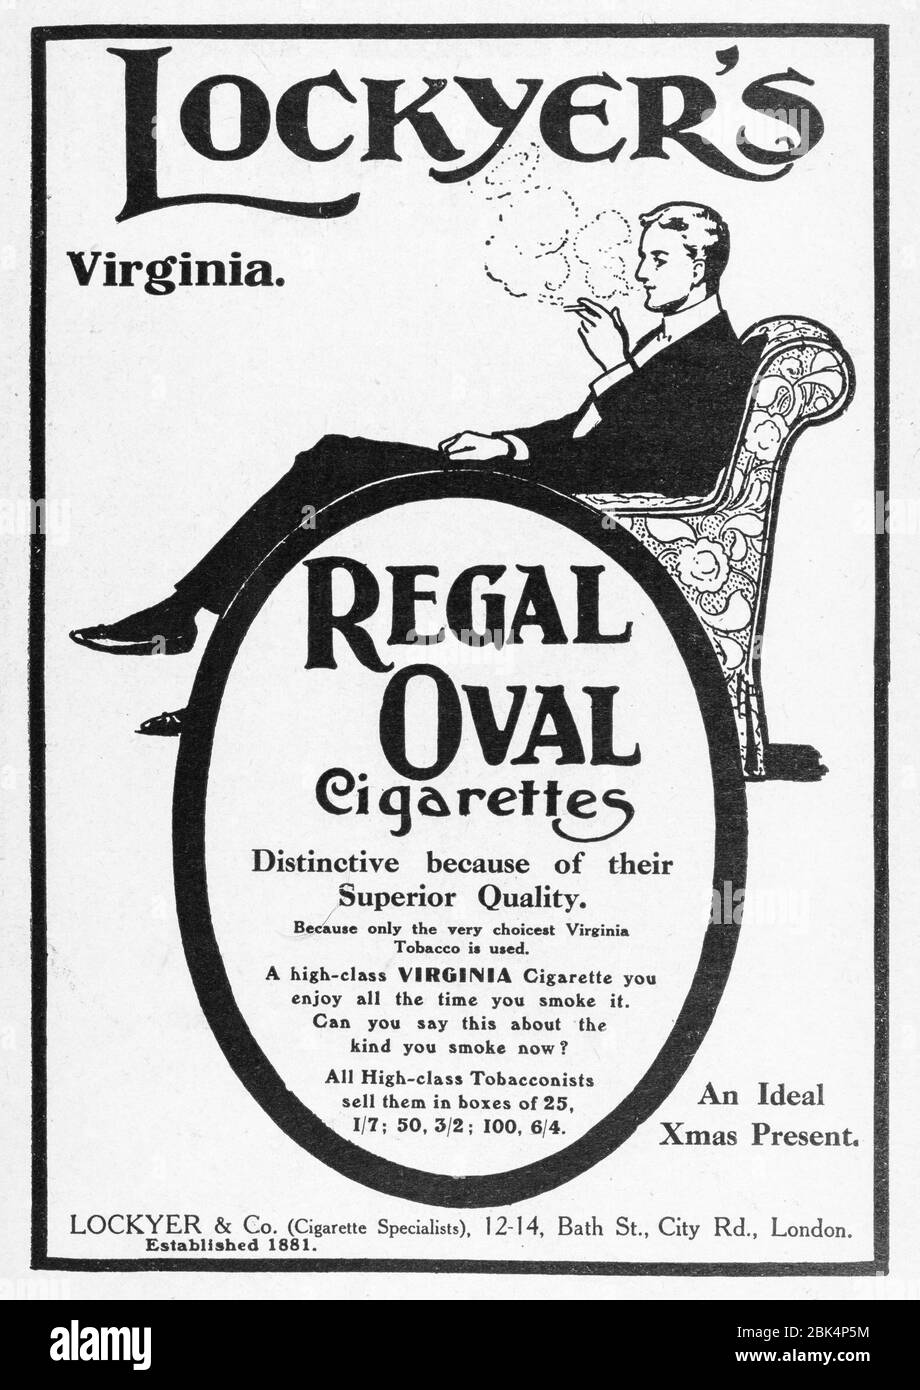 Alte Vintage-Werbung für Tabak/Zigarette/Rauchen von Anfang des 20. Jahrhunderts, vor Beginn der Werbestandards. Geschichte der Werbung, alte Tabakwerbung Stockfoto